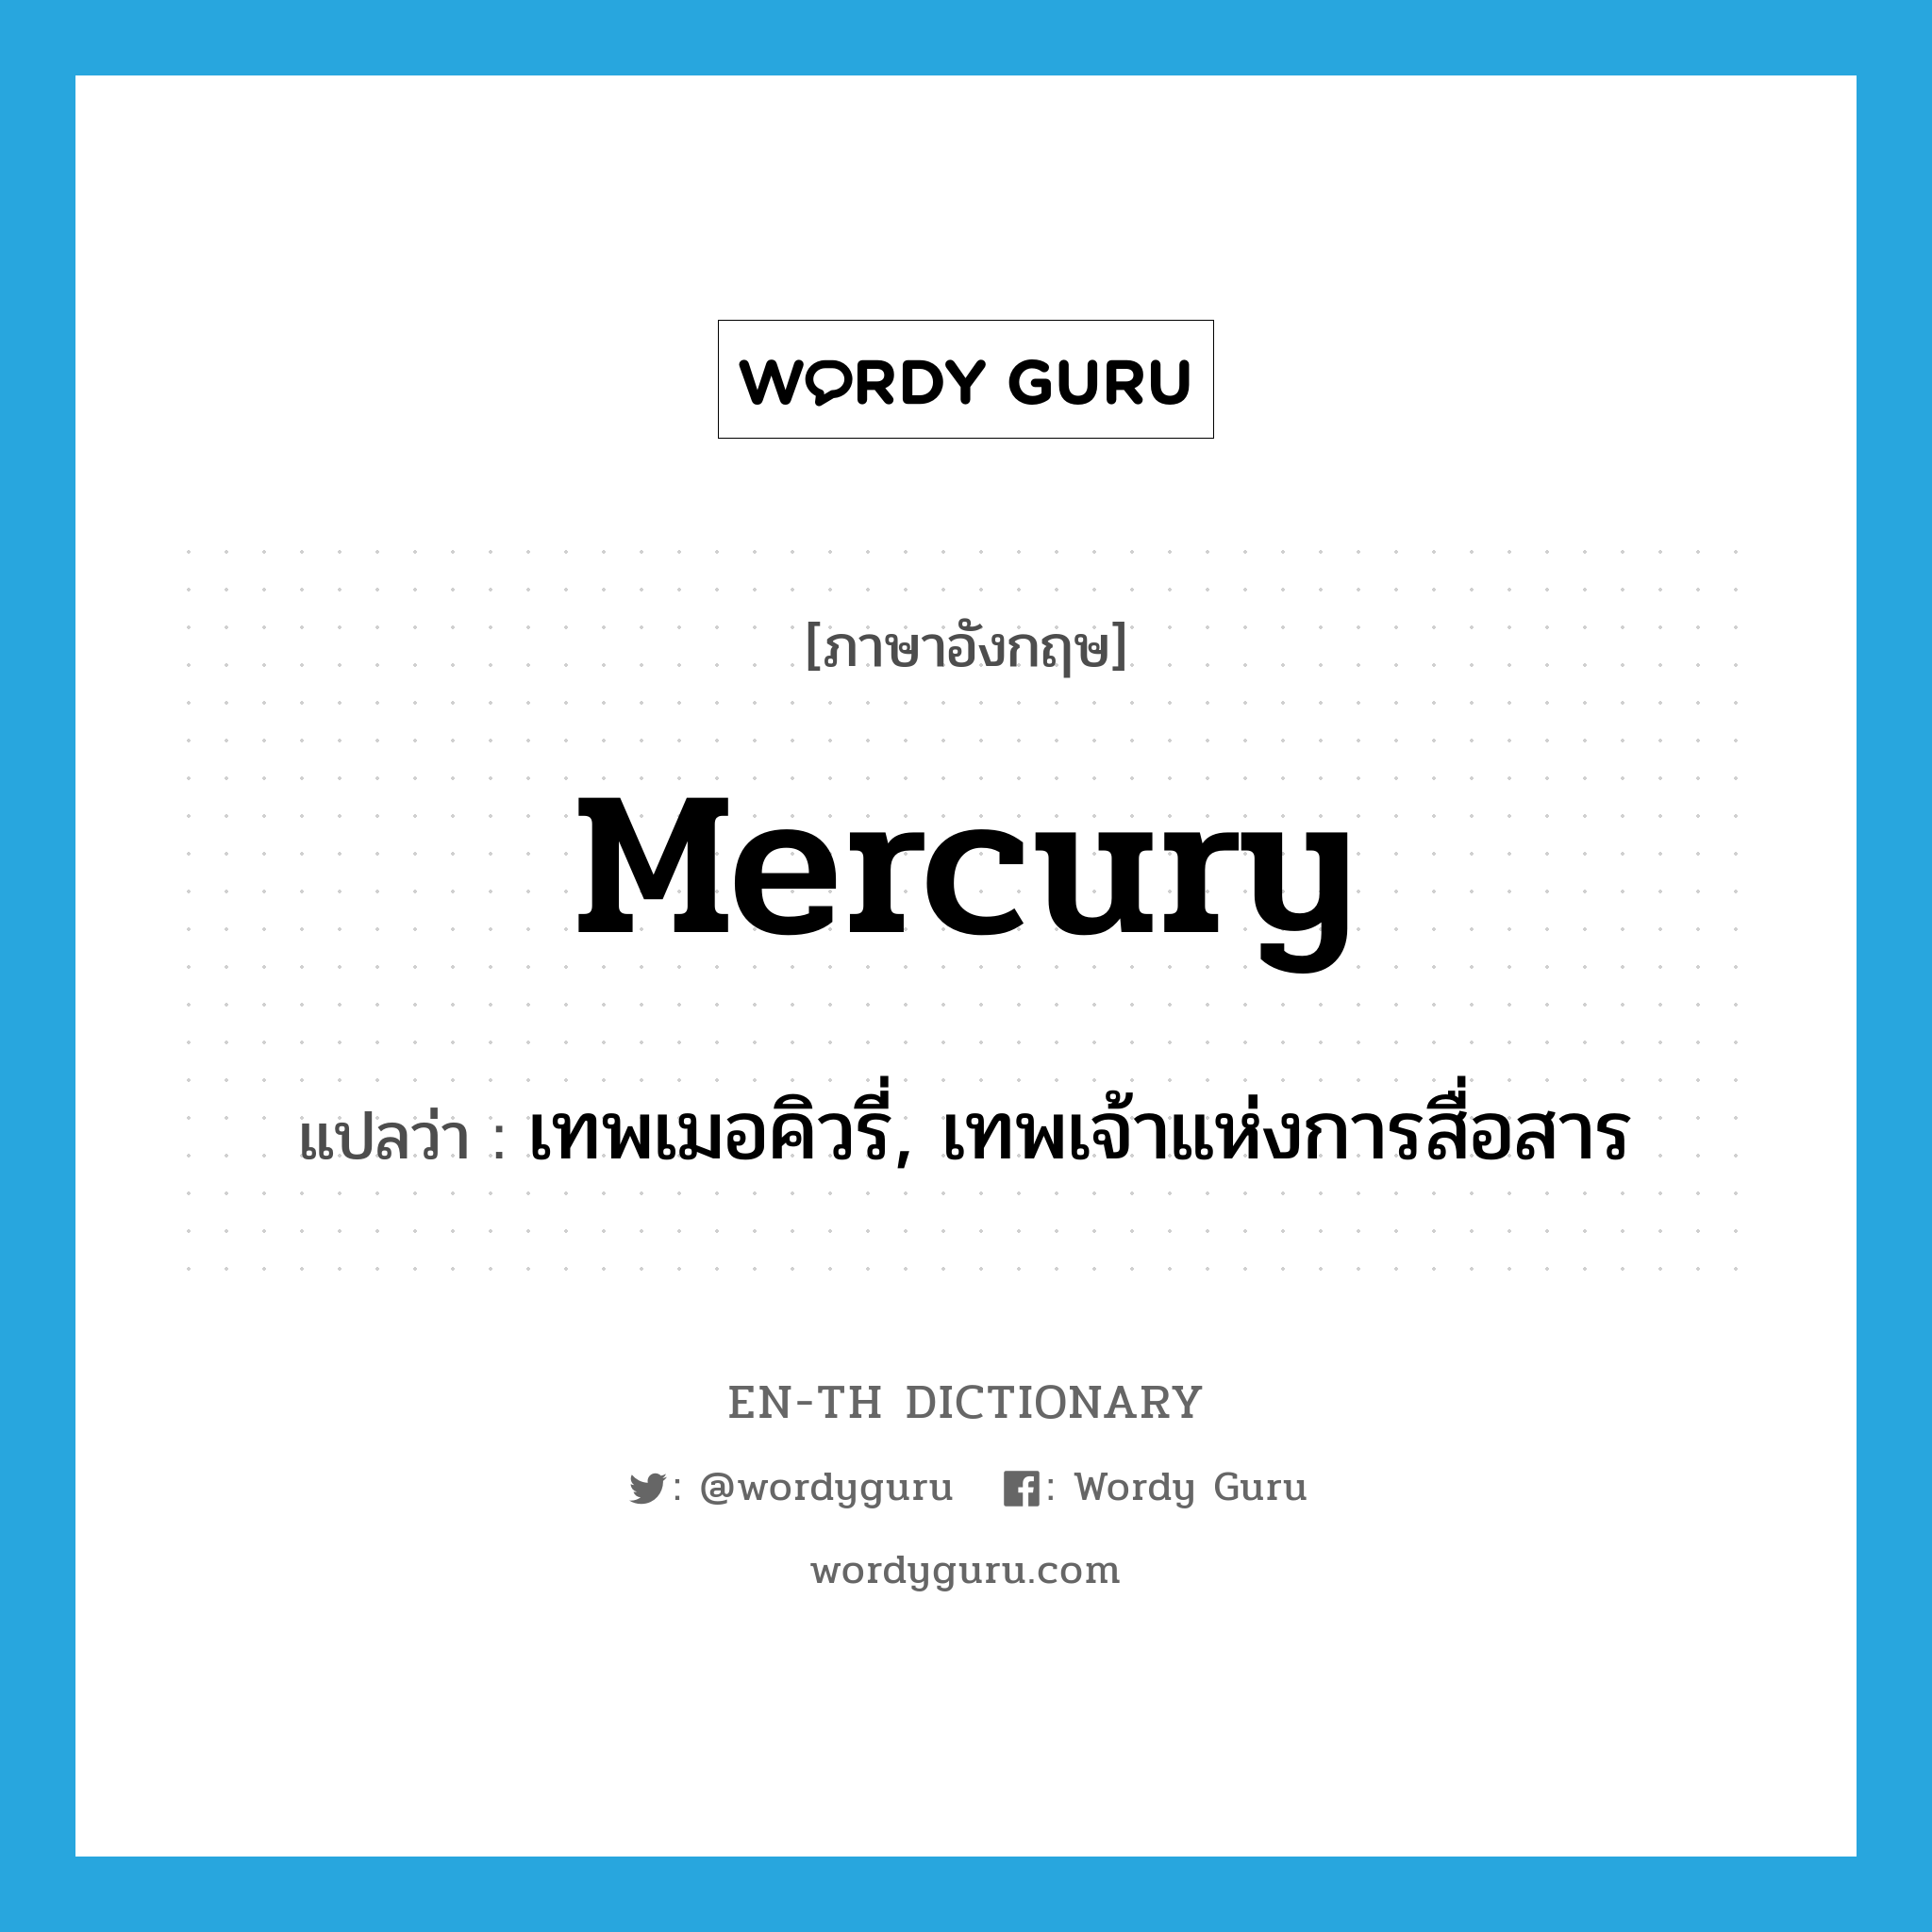 เทพเมอคิวรี่, เทพเจ้าแห่งการสื่อสาร ภาษาอังกฤษ?, คำศัพท์ภาษาอังกฤษ เทพเมอคิวรี่, เทพเจ้าแห่งการสื่อสาร แปลว่า Mercury ประเภท N หมวด N